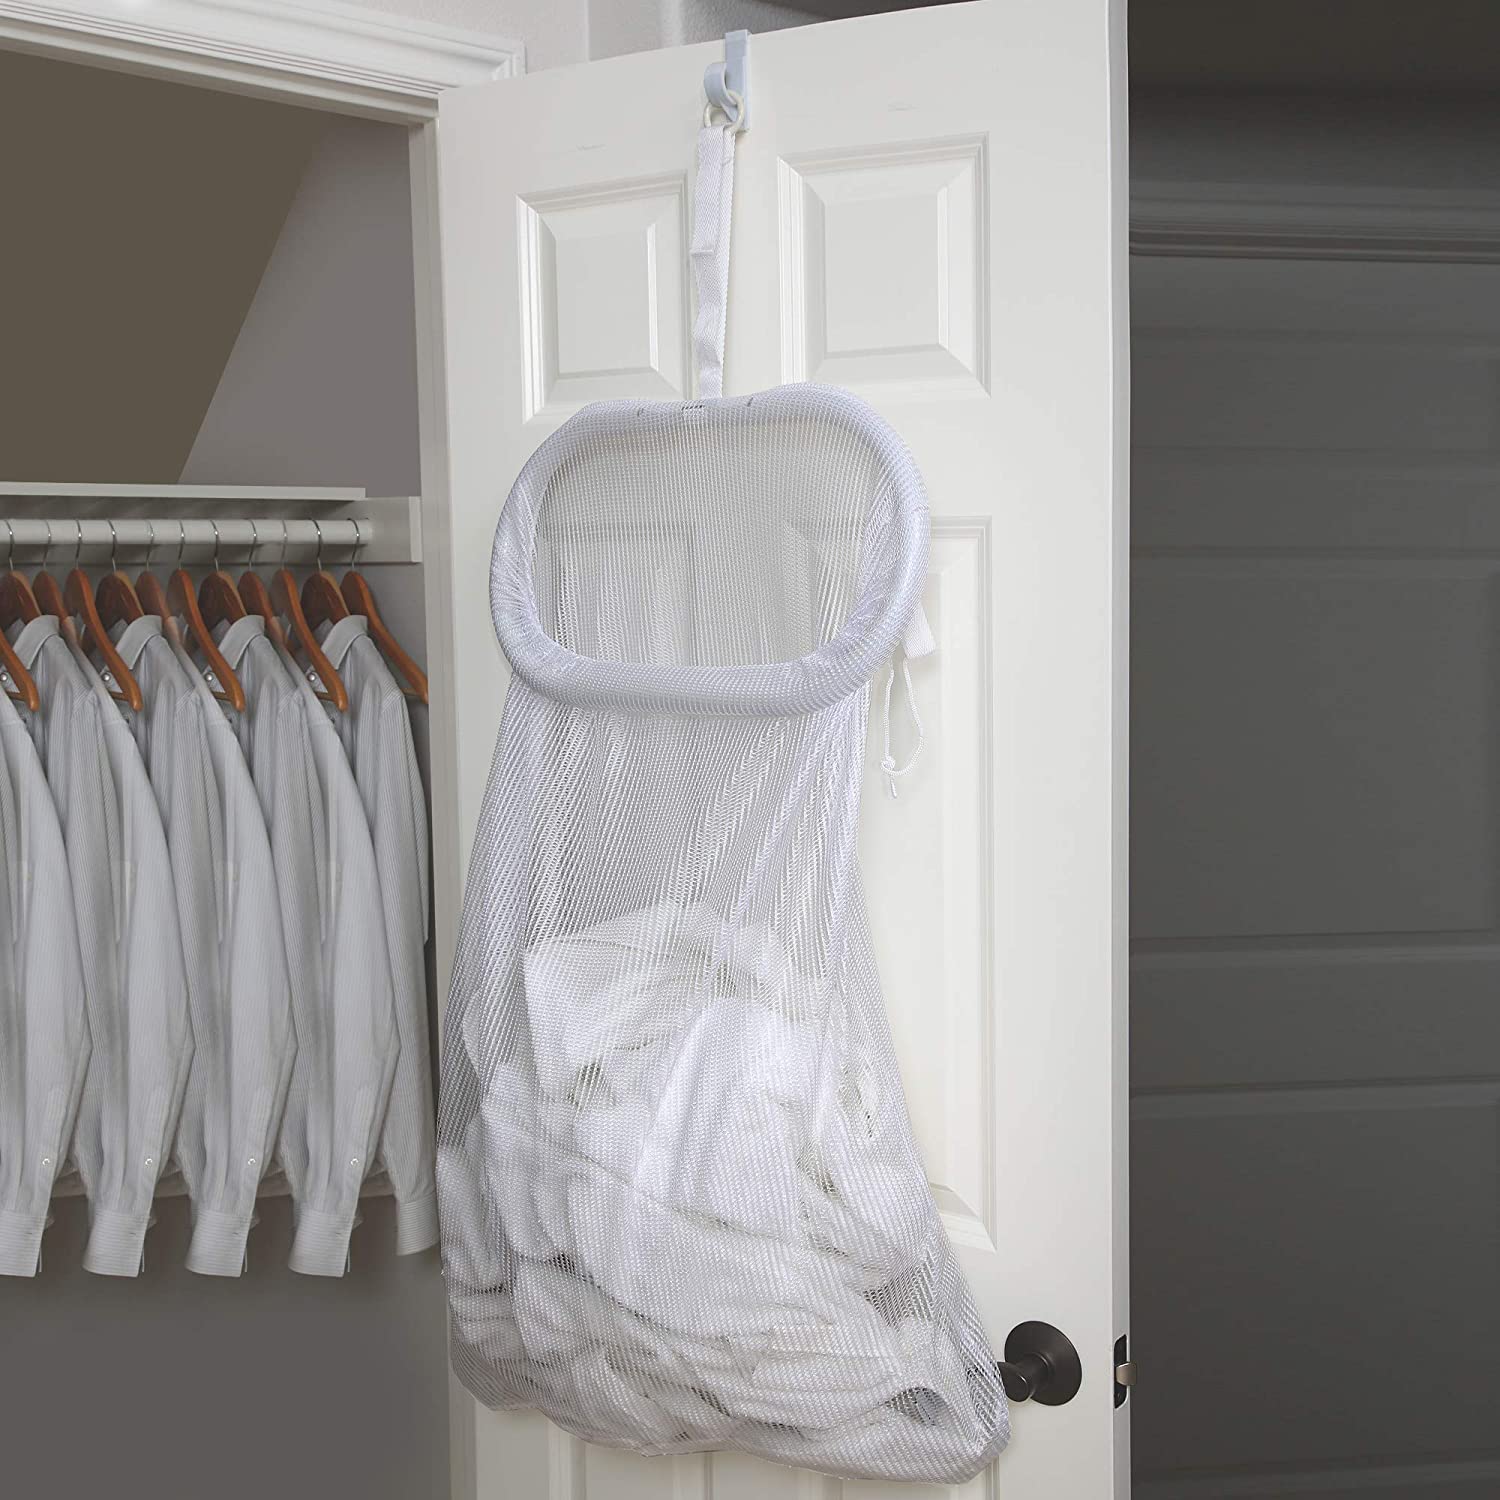 Hanging Laundry Hamper - Smart Design® 2